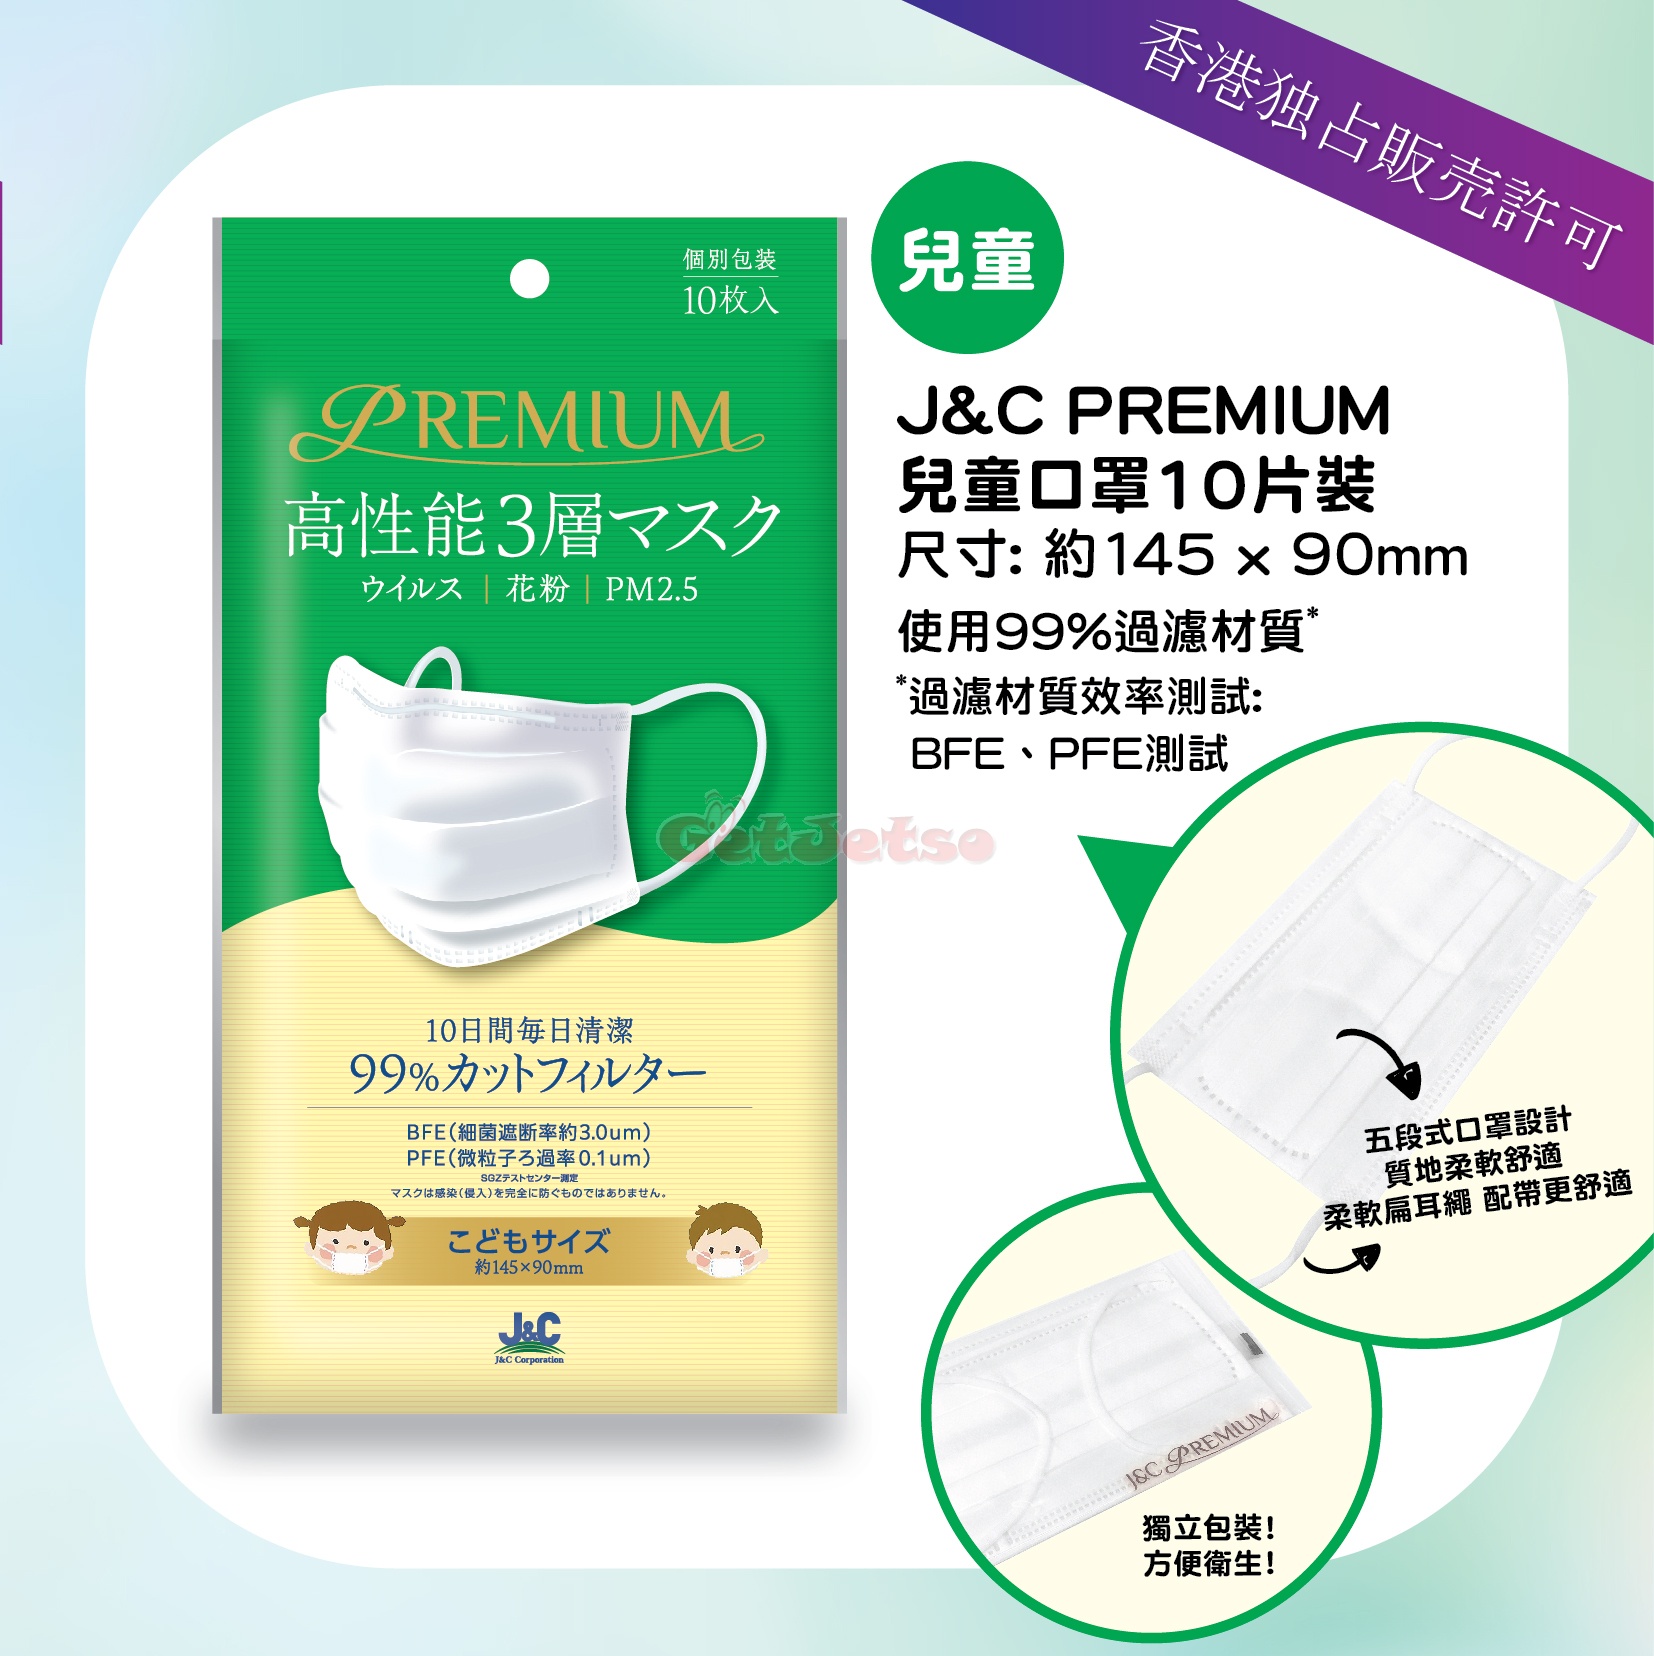 日本城8月14日發售J&C PREMIUM三層口罩圖片4